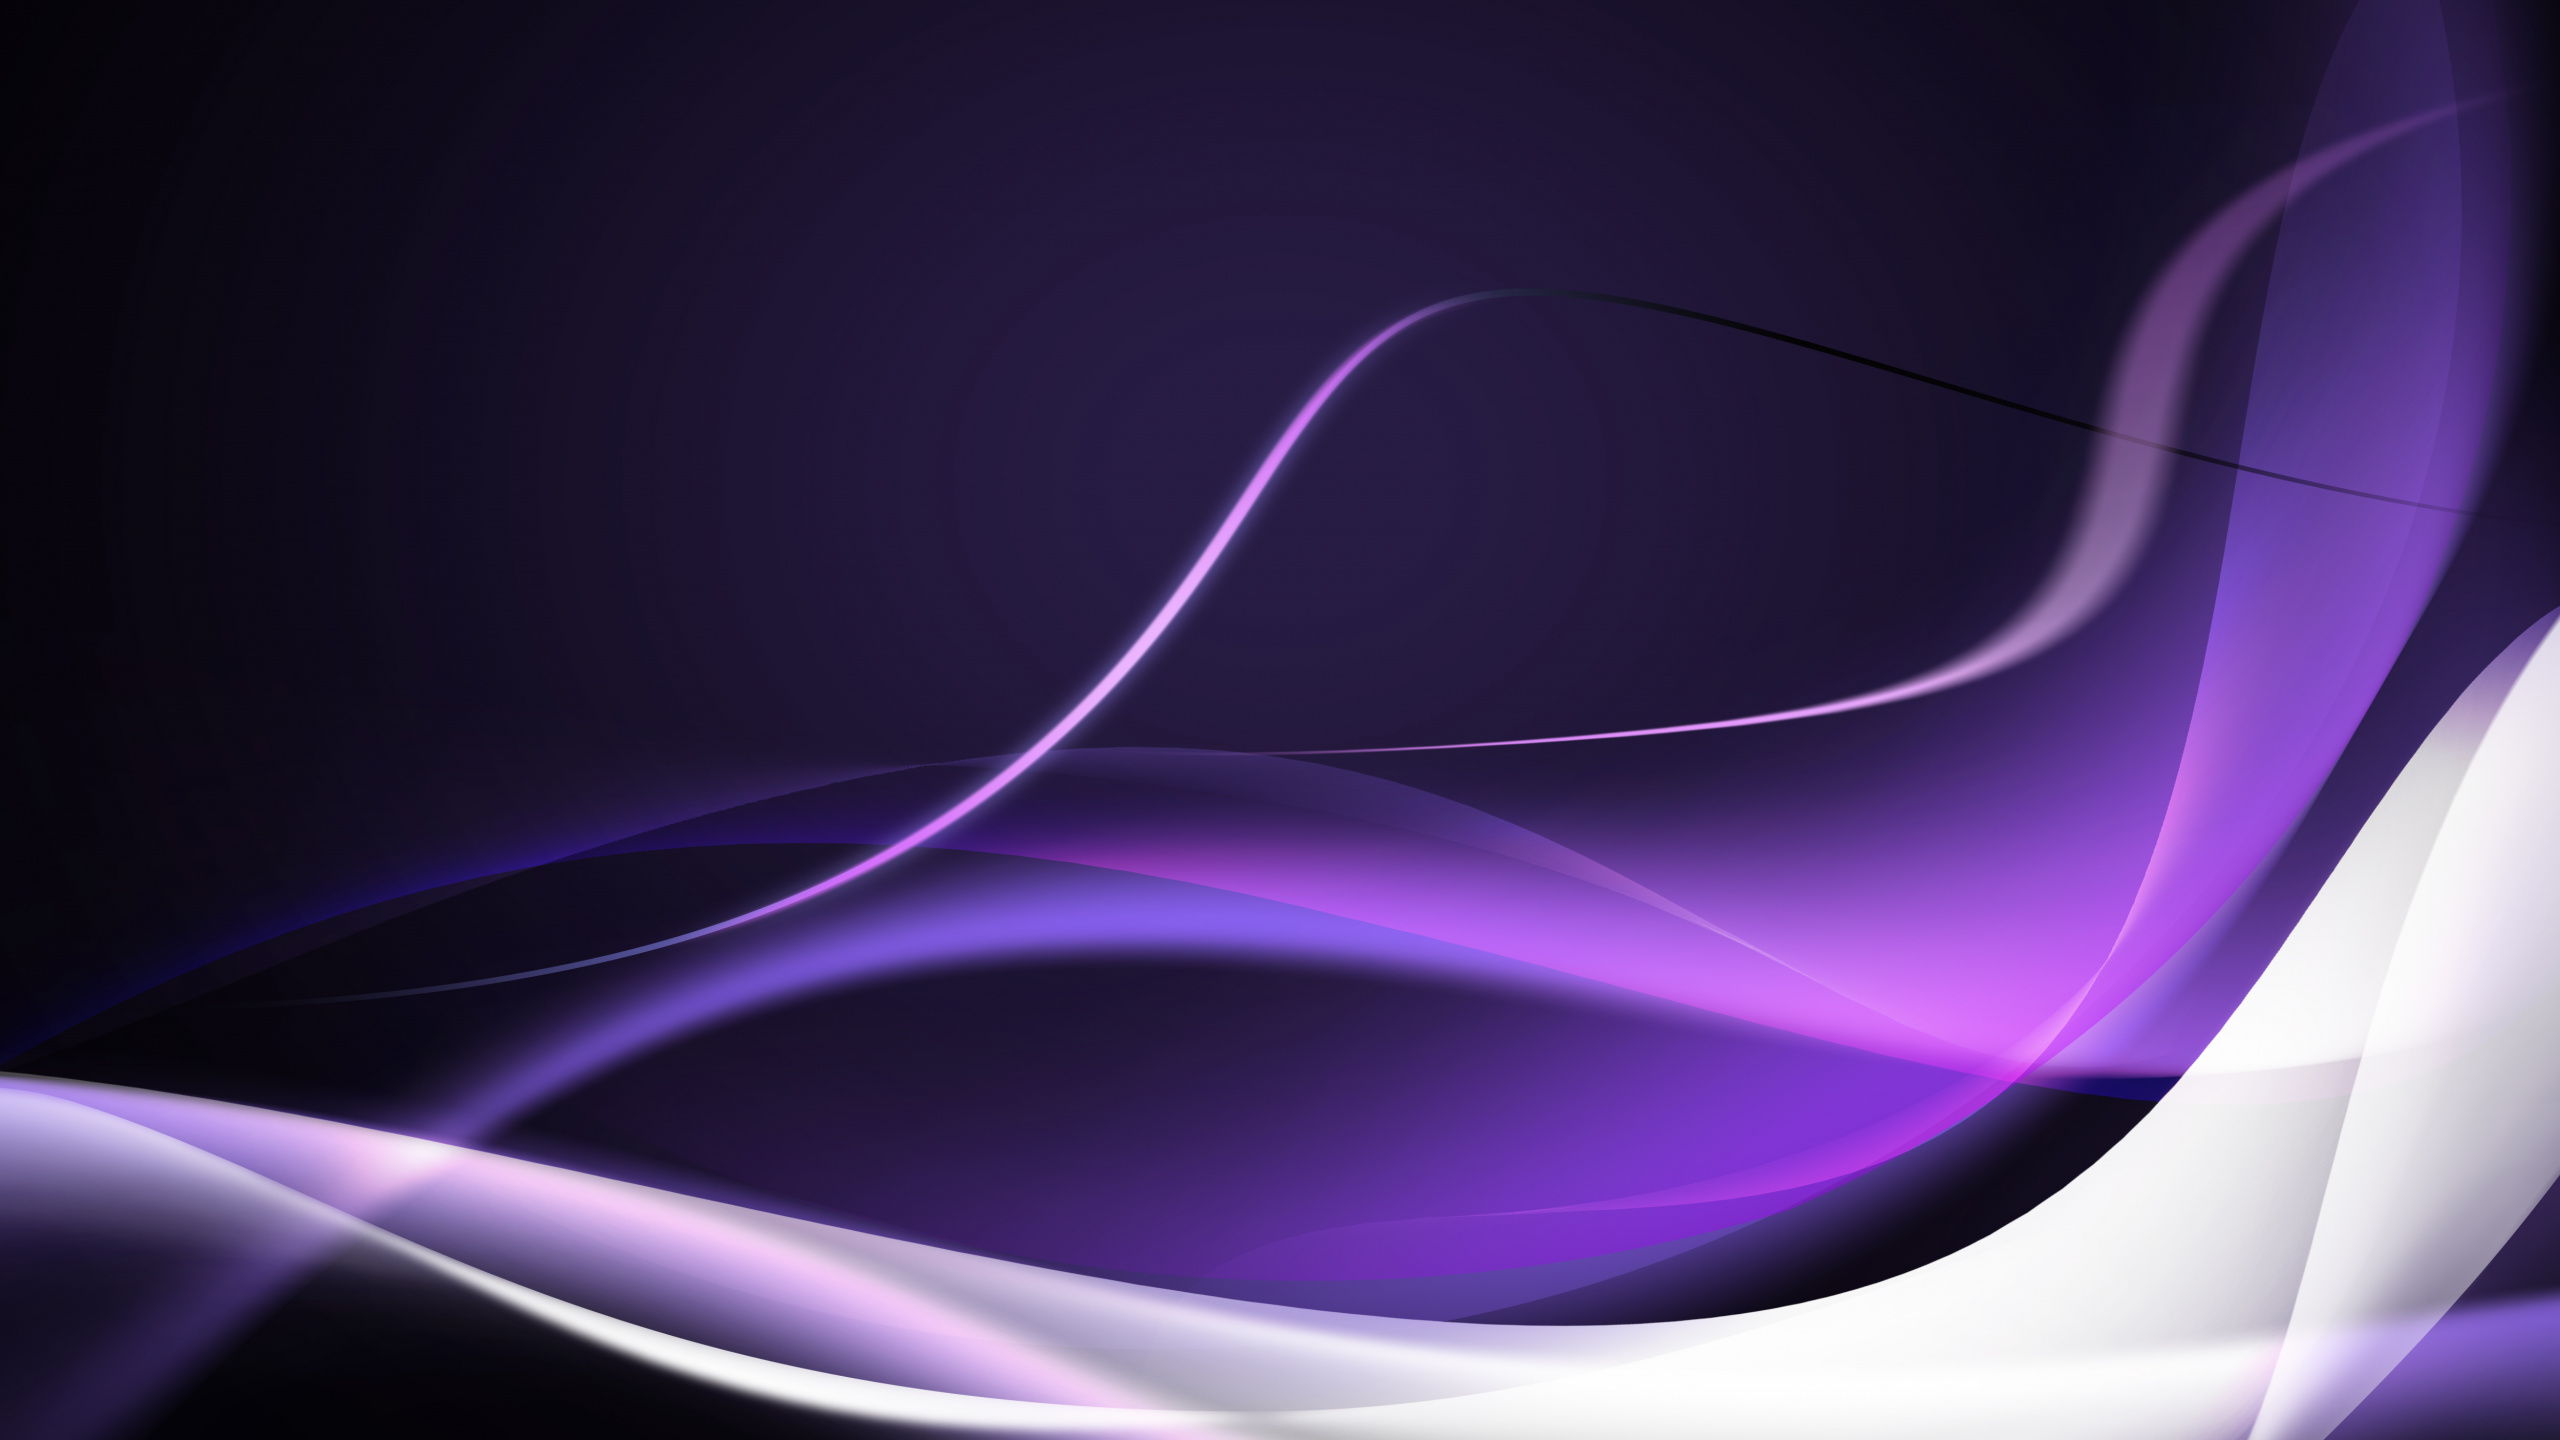 紫色的, 紫罗兰色, 光, 欧几里德矢量, 品红色 壁纸 2560x1440 允许